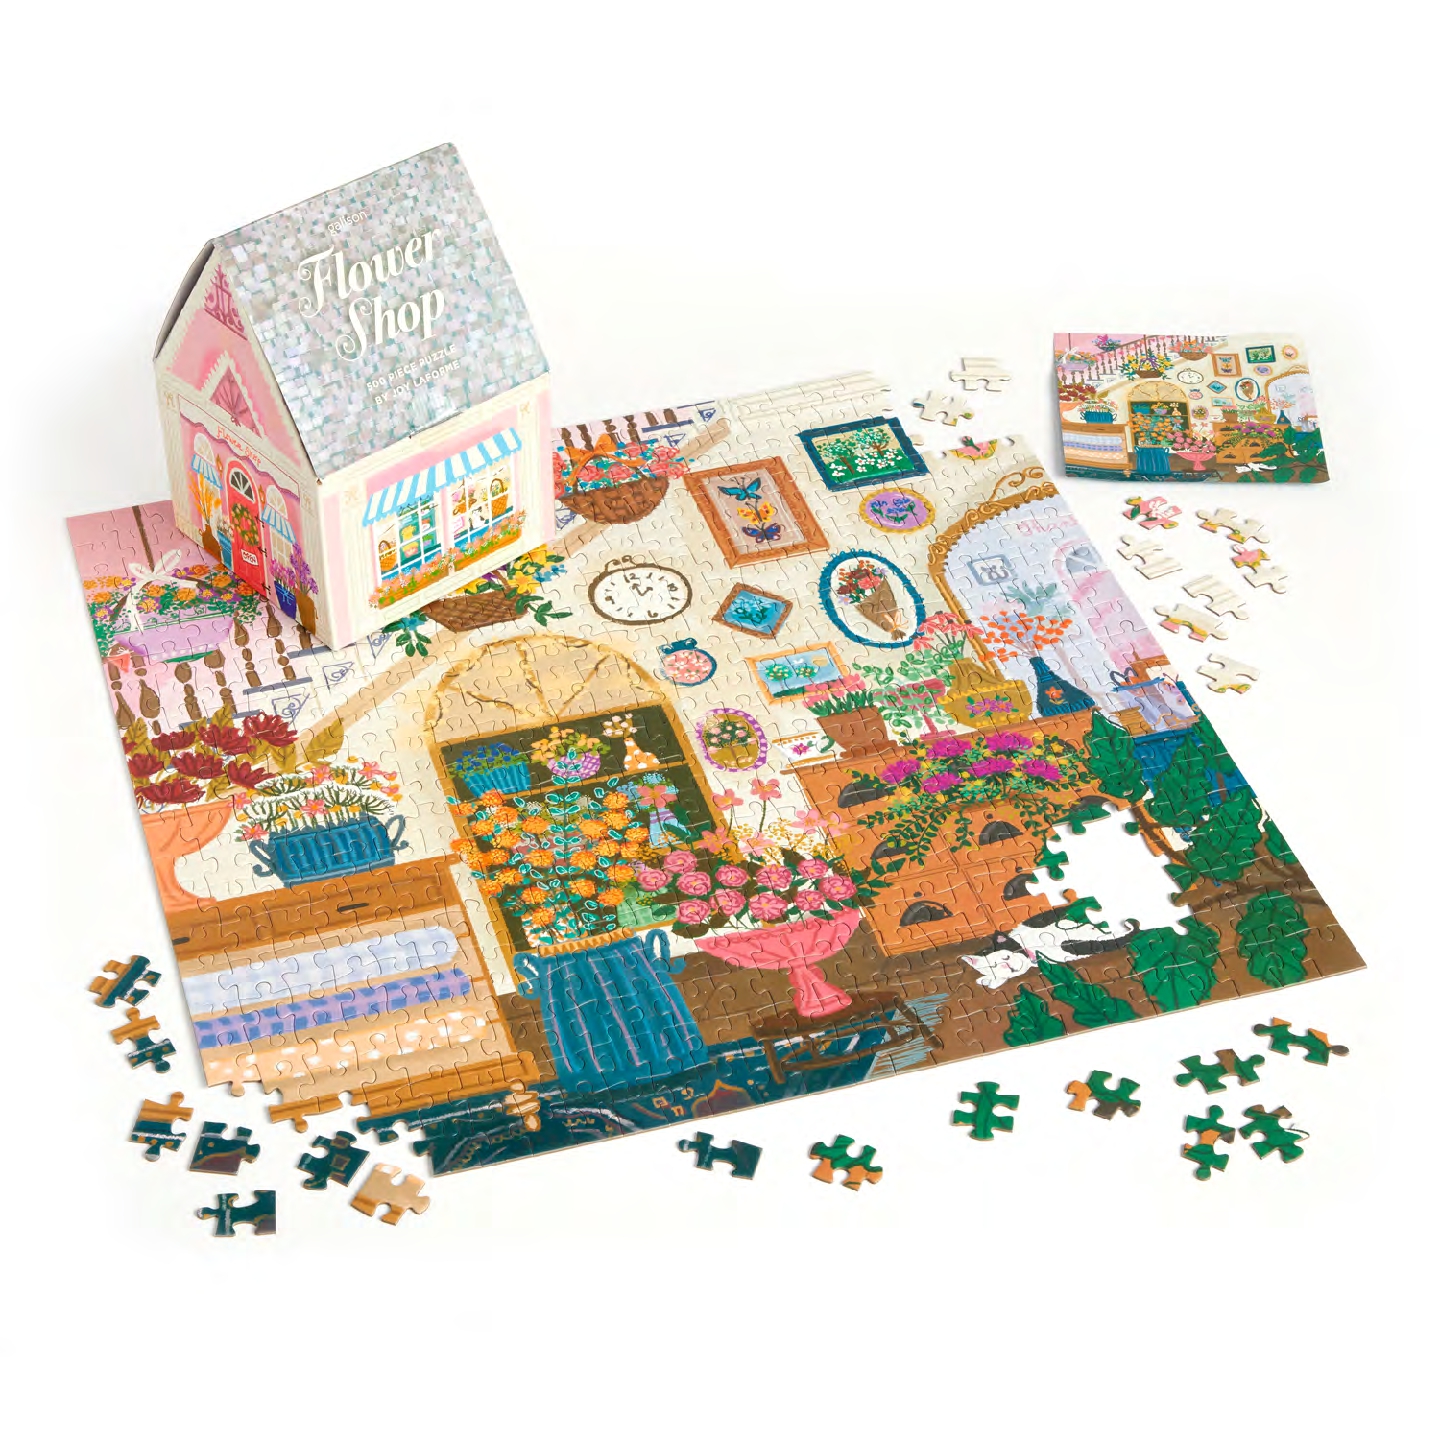 Joy Laforme Flower Shop 500 Piece House Puzzle